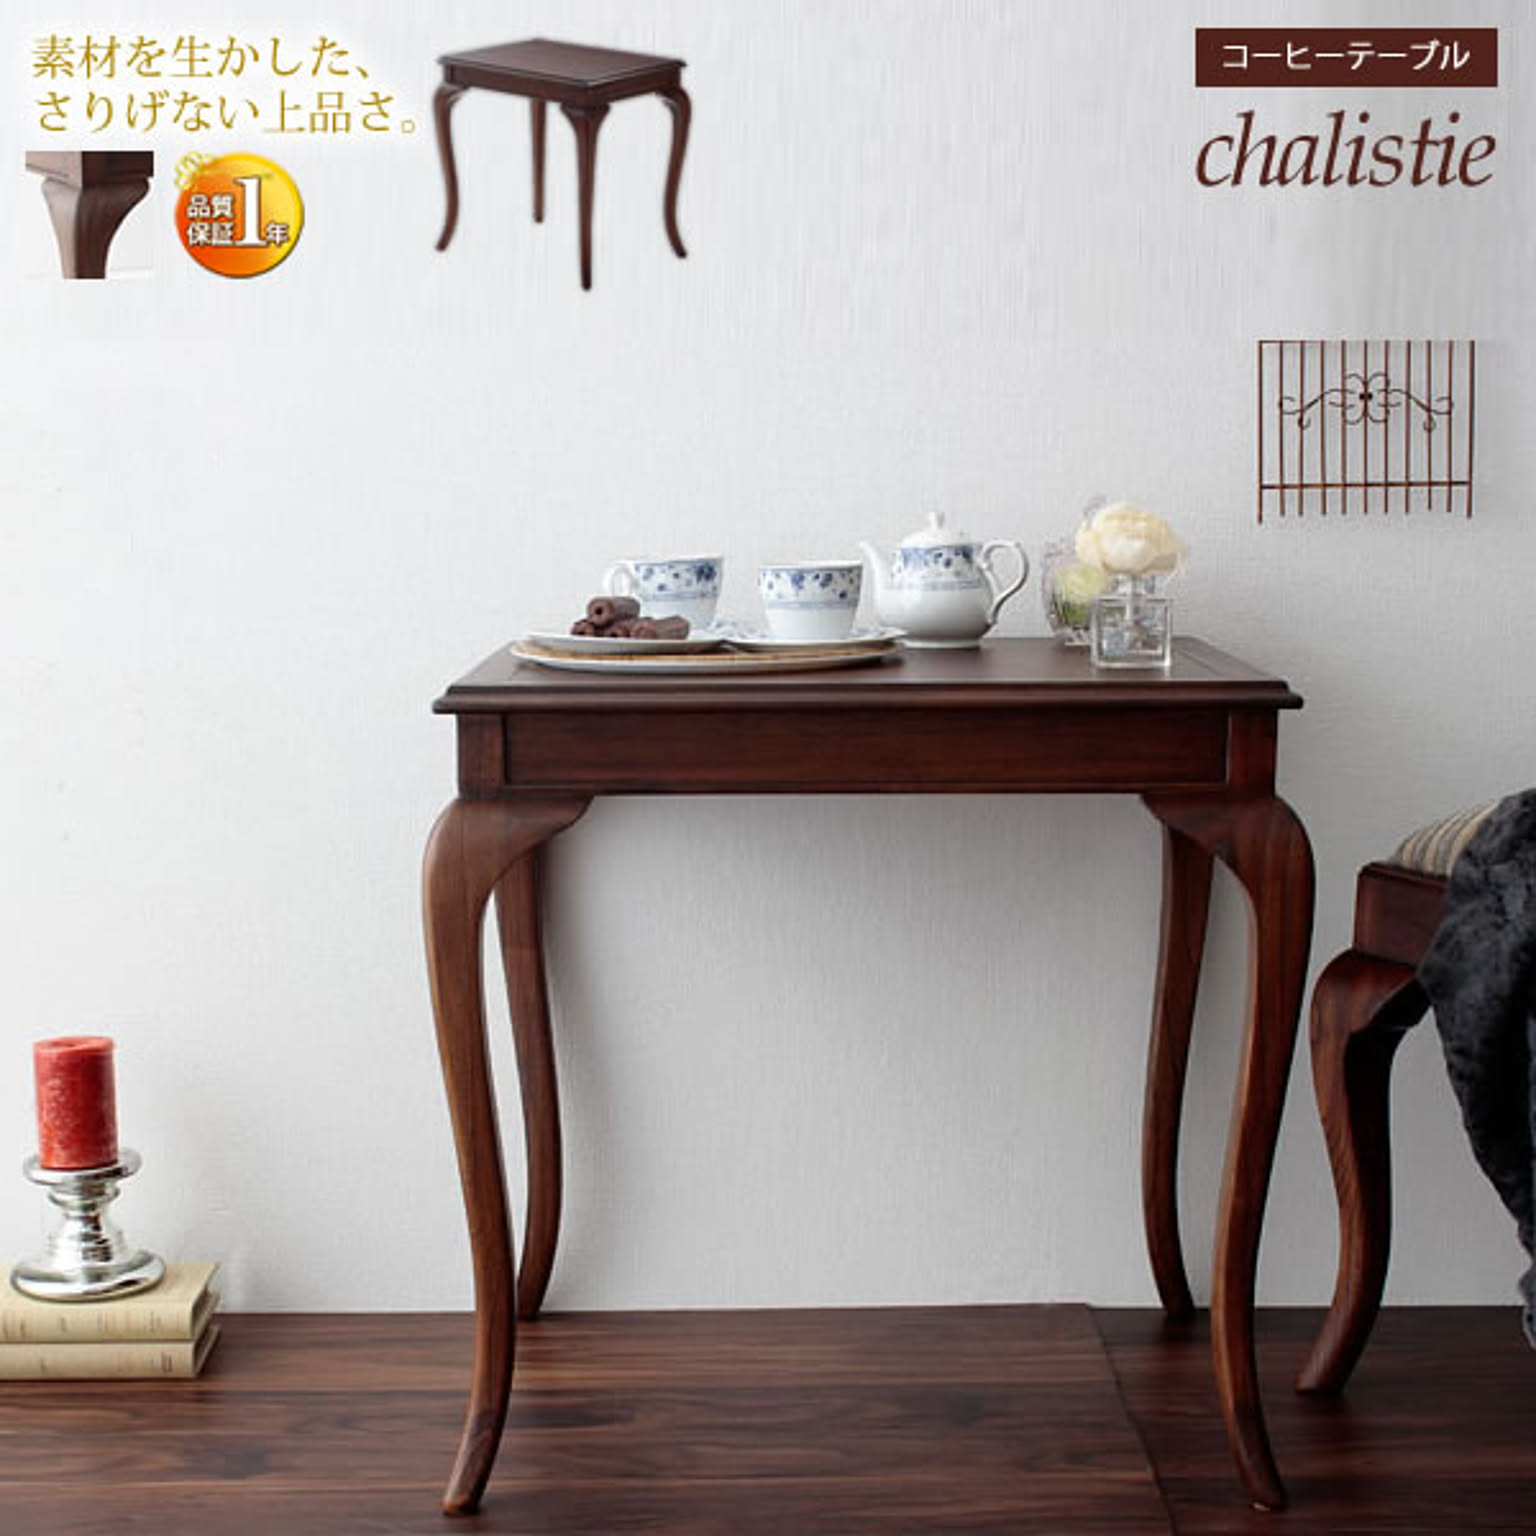 コーヒーテーブル ダイニングテーブル 幅61【chalistie】 ブラウン(brown) (ロマンティック) 天然木 アンティーク調 クラシック 英国風 イギリス風 